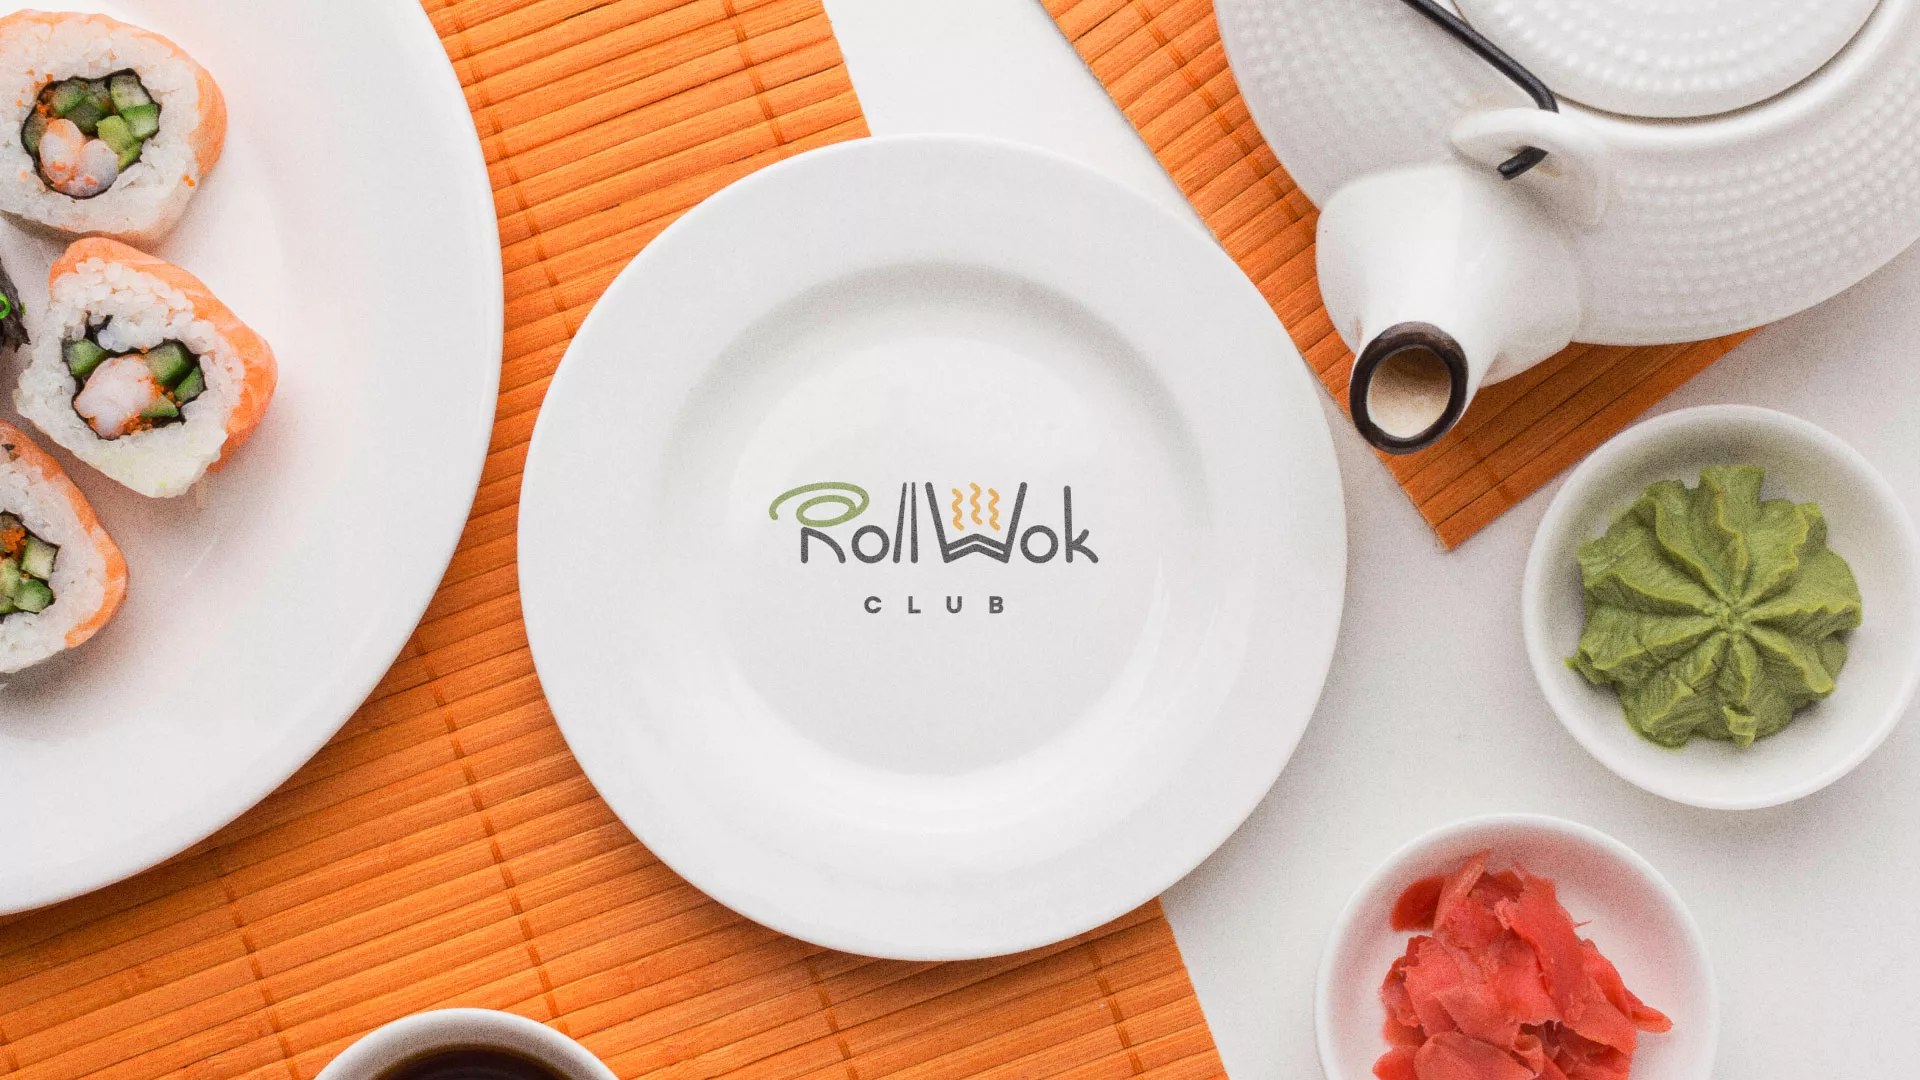 Разработка логотипа и фирменного стиля суши-бара «Roll Wok Club» в Пыталово